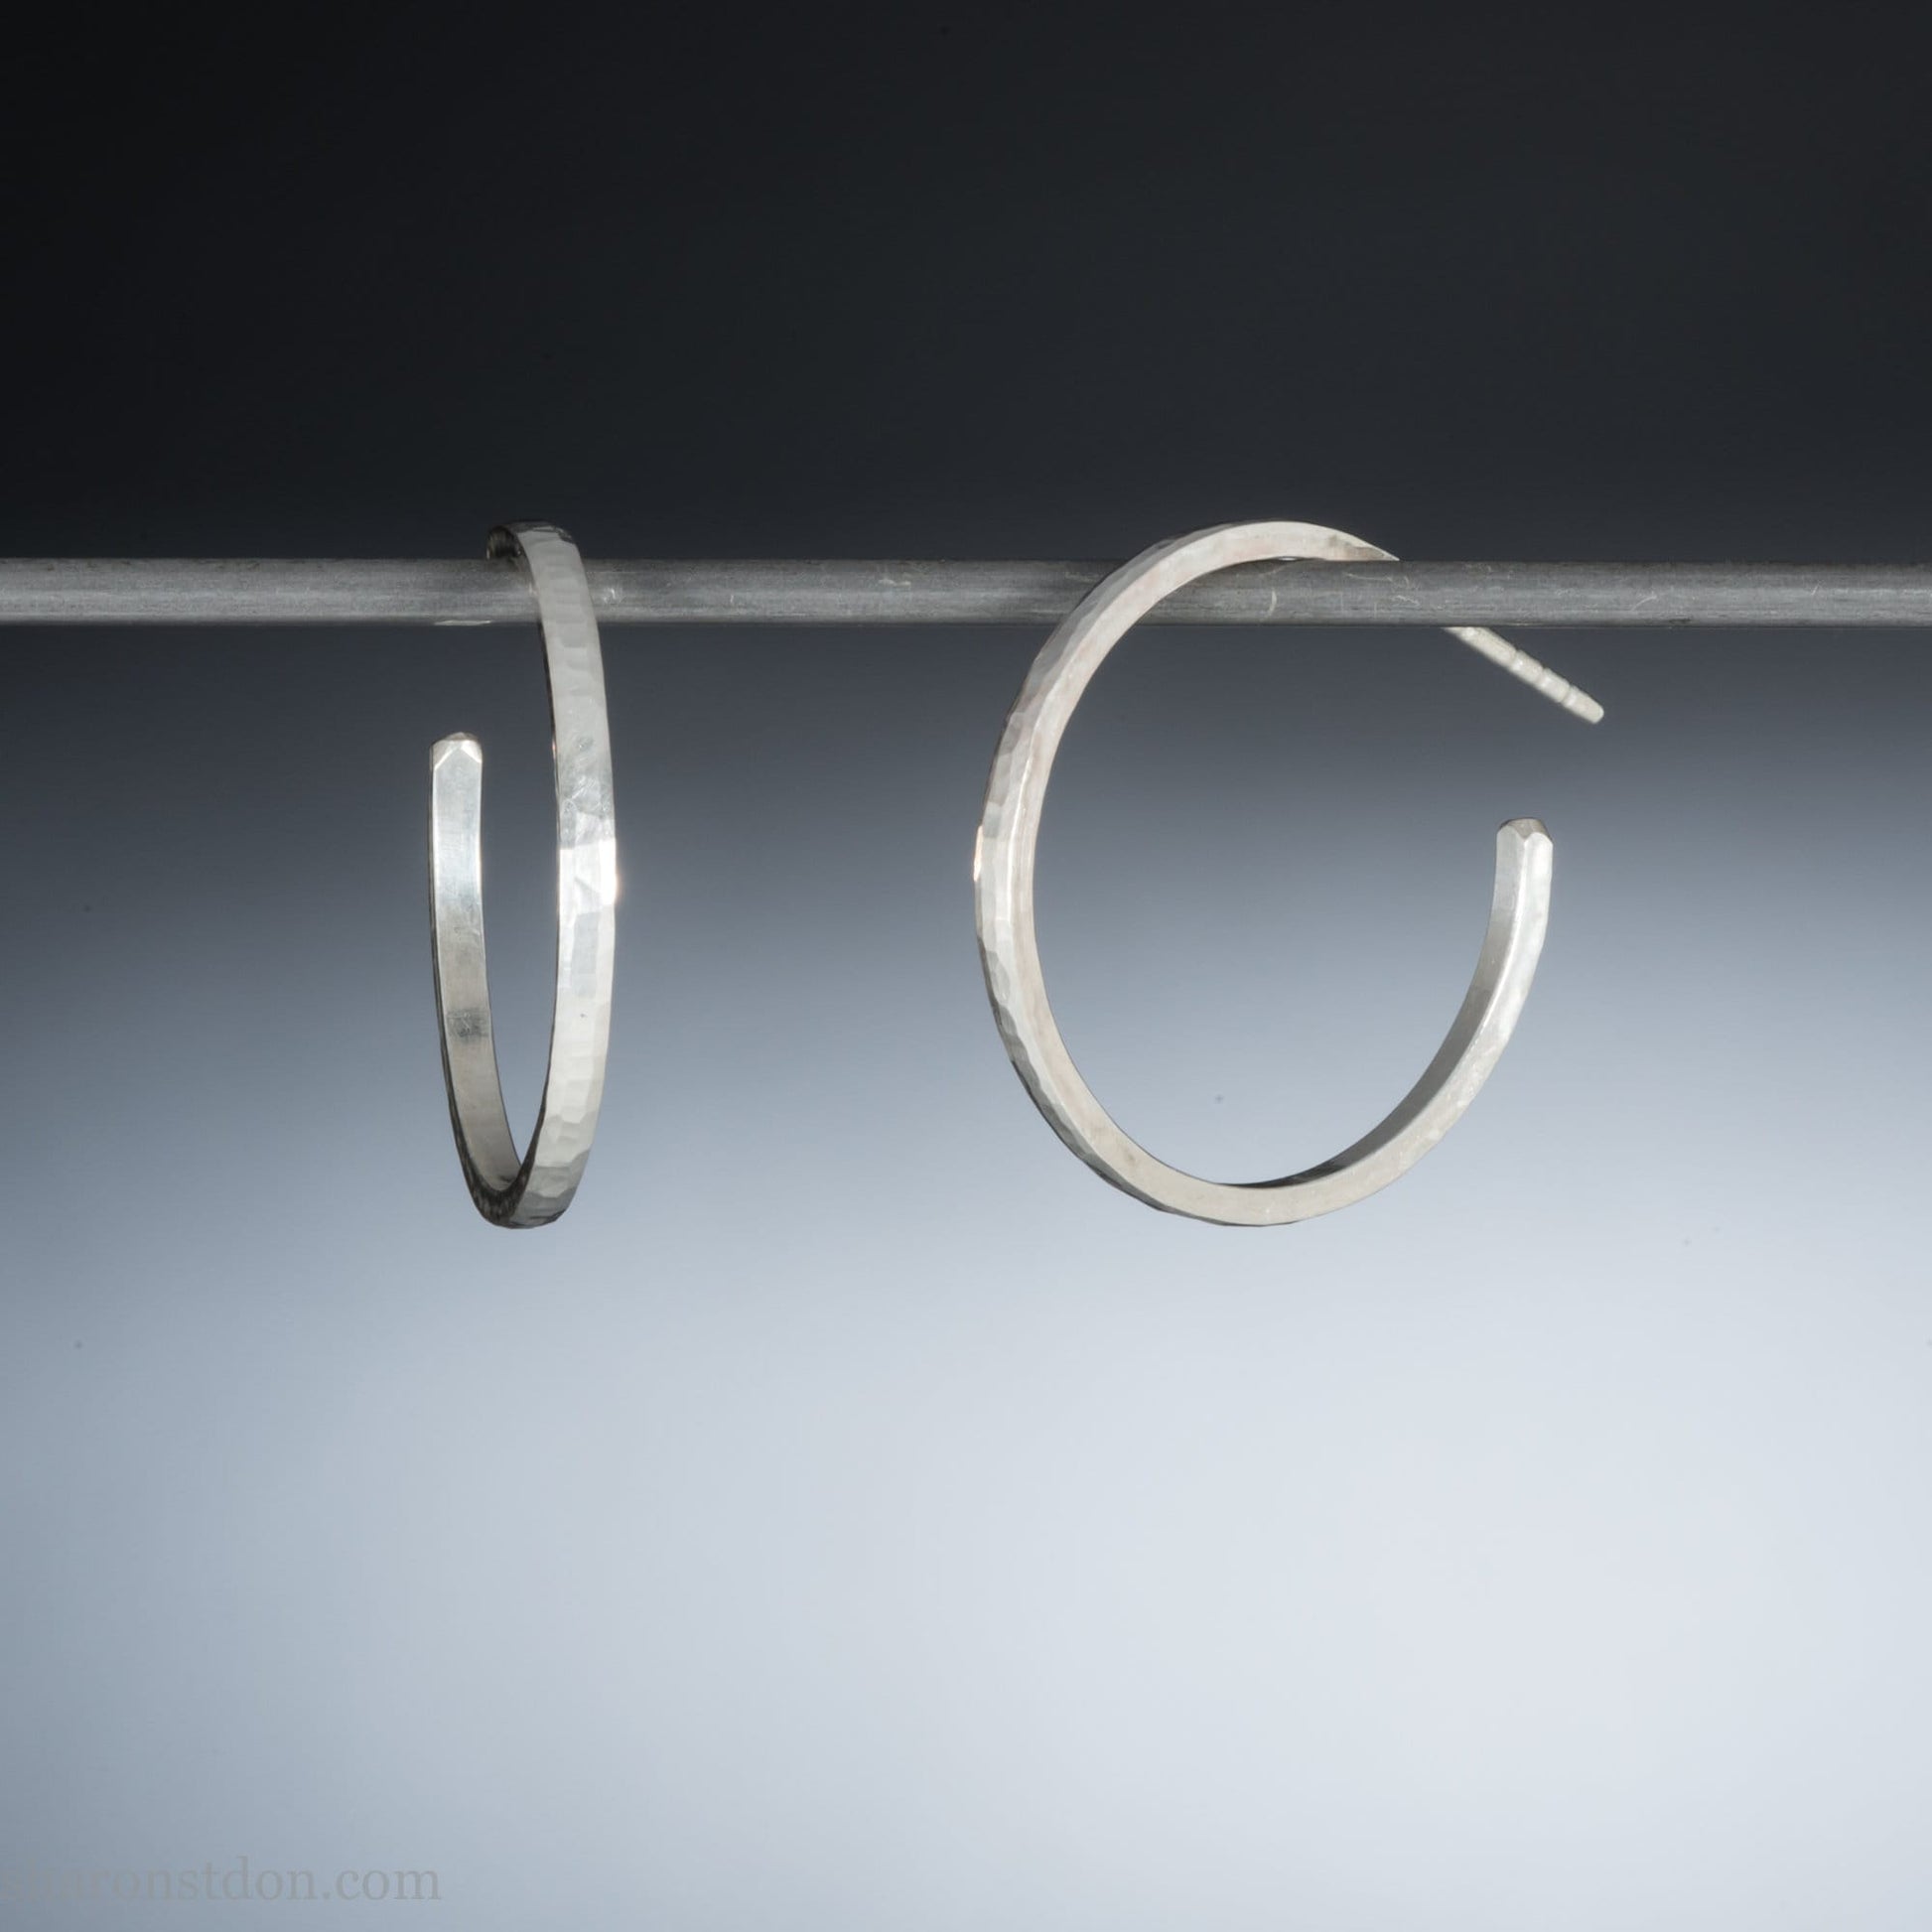 25mm 925 sterling silver hoop earrings